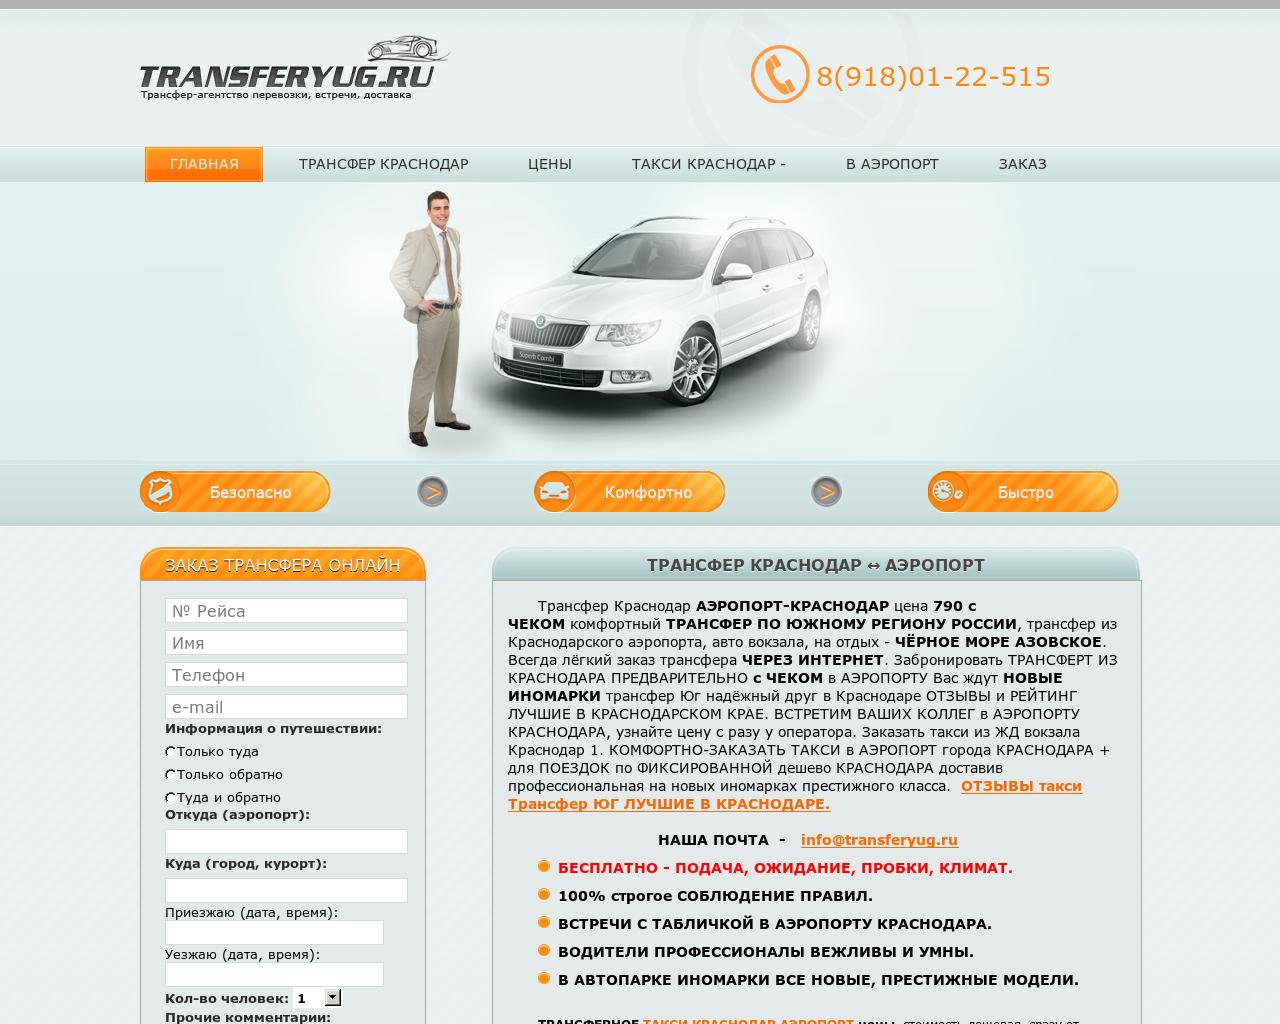 Изображение сайта transferyug.ru в разрешении 1280x1024